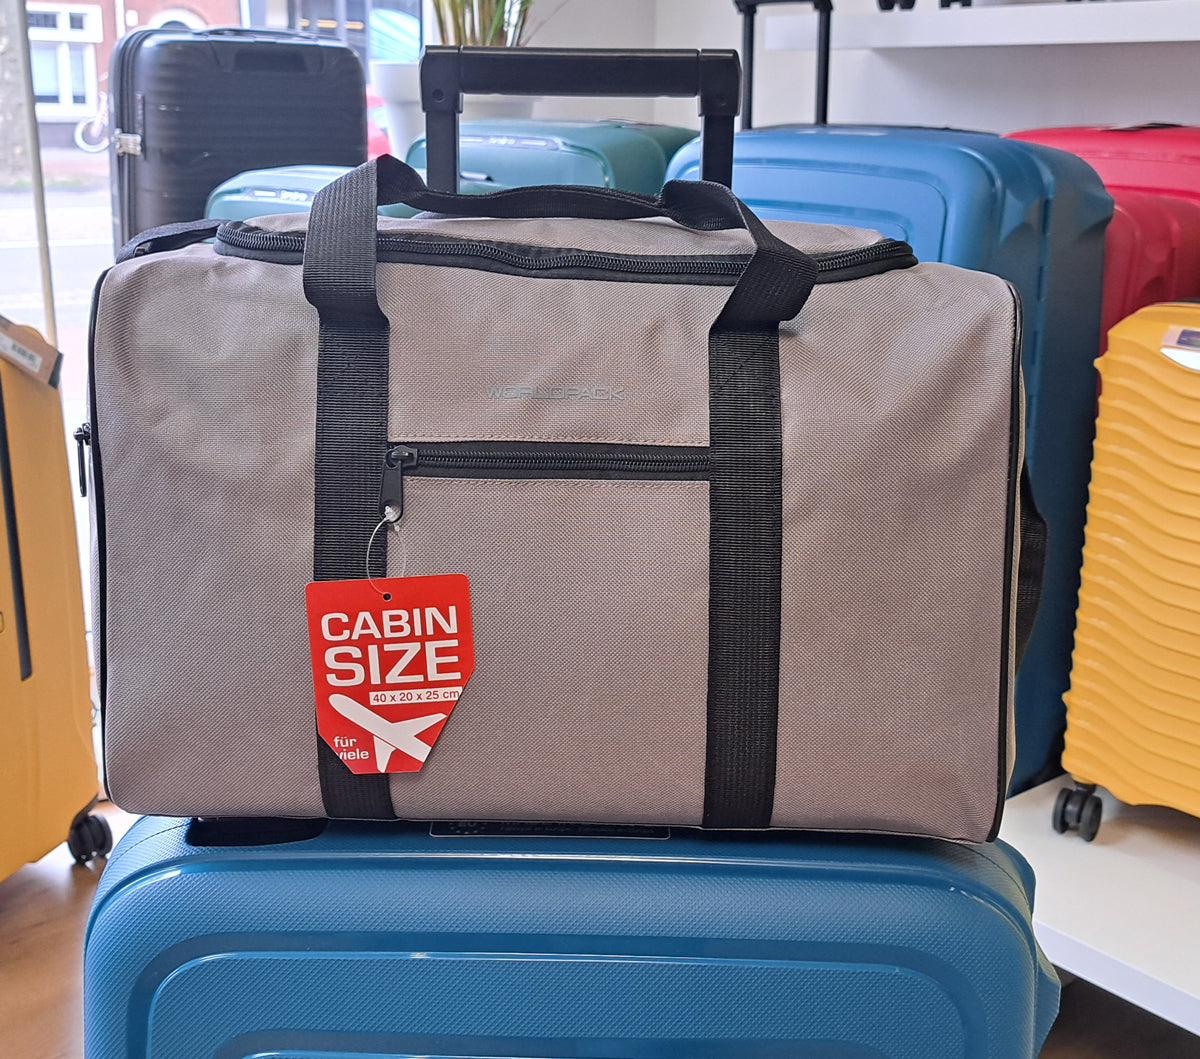 Handbagage ryanair 40x20x25 maximum size